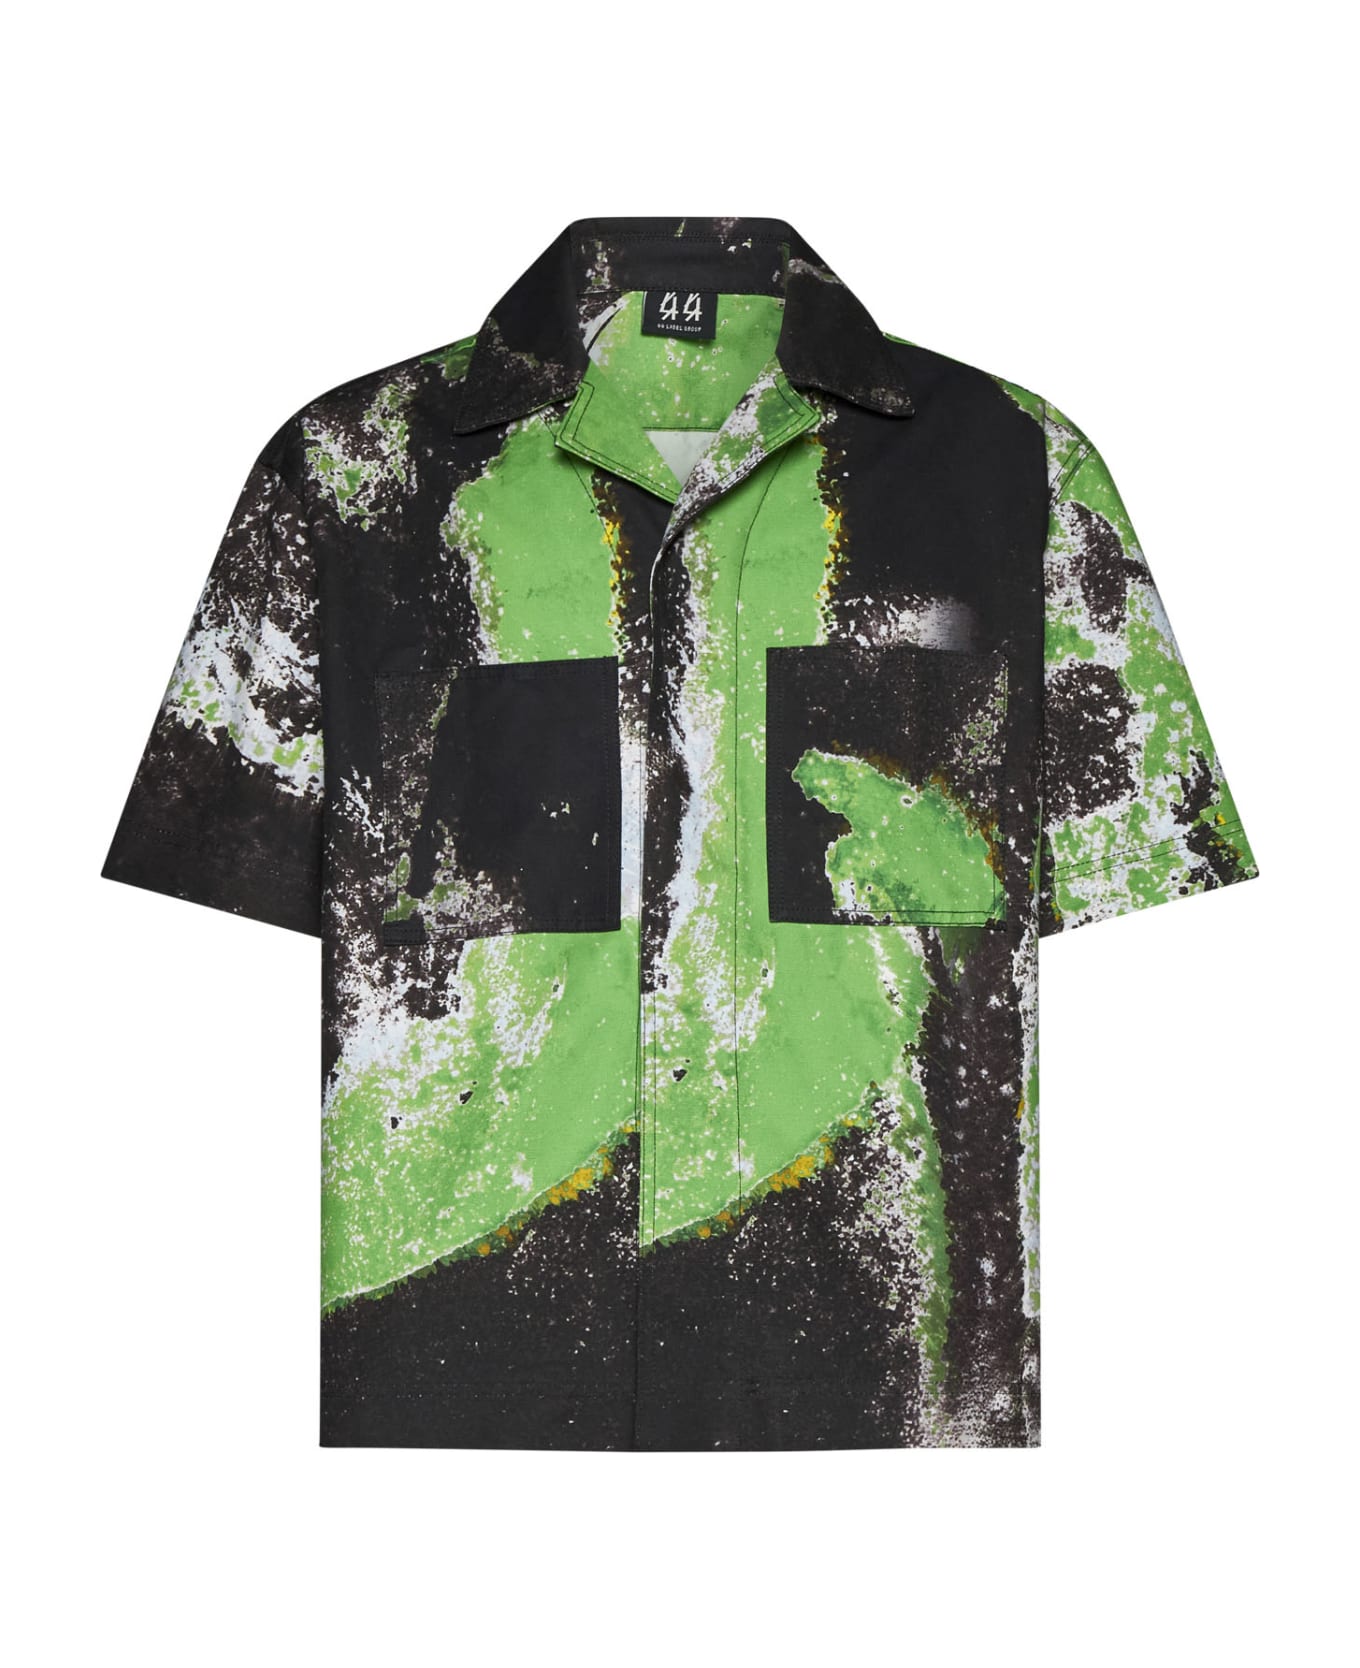 44 Label Group Shirt - Black+grunge green